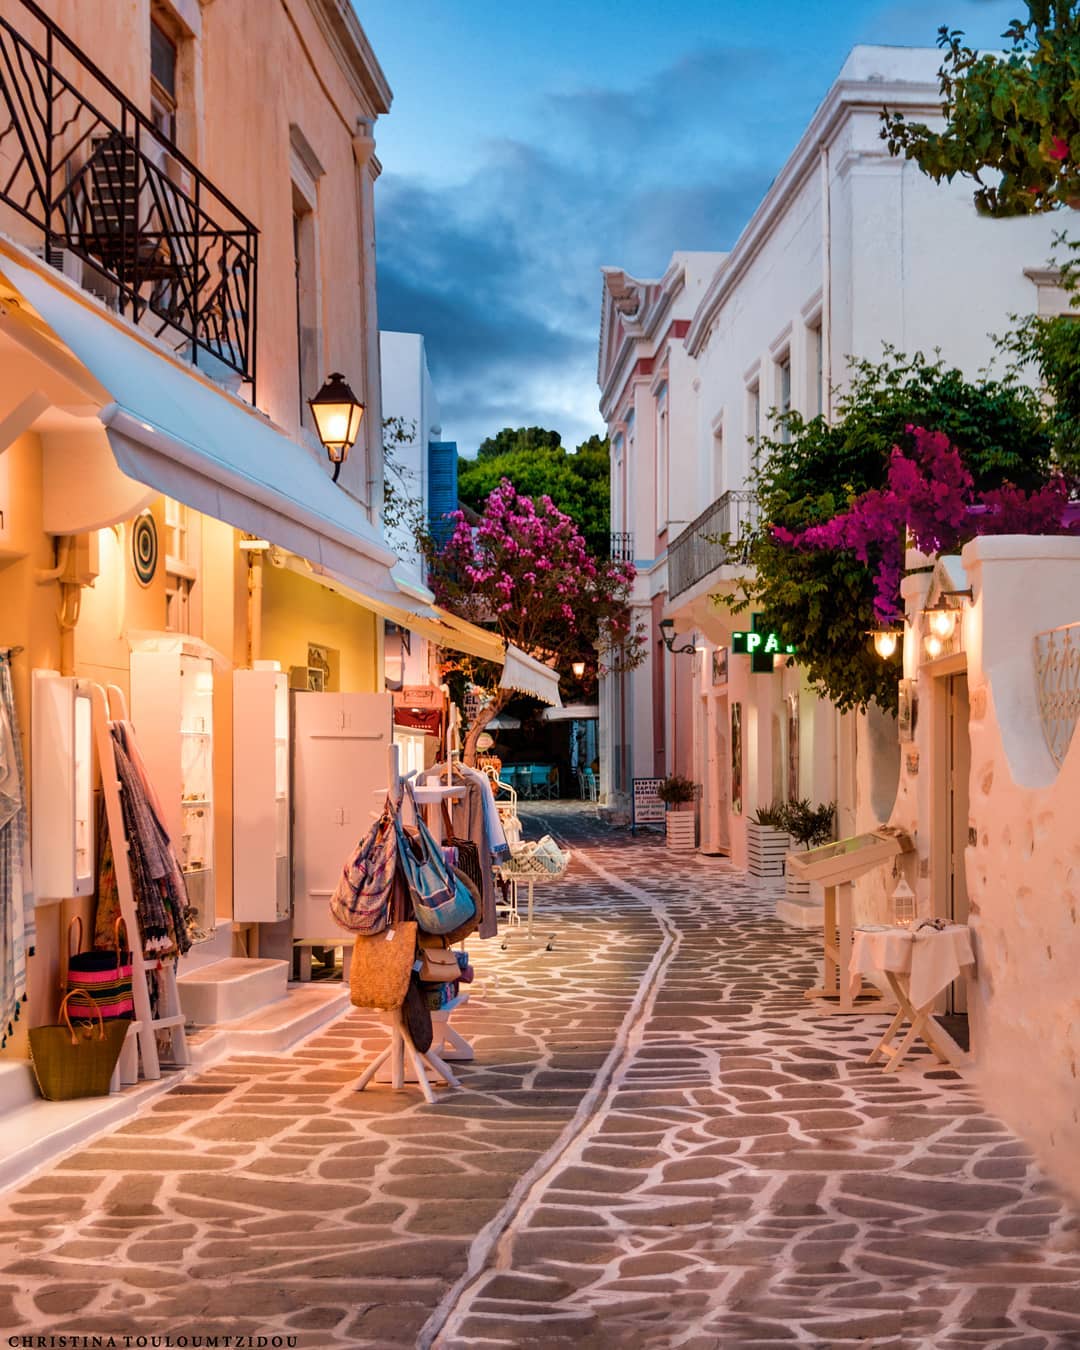 Греческие улицы на фотографиях Кристины Тулумтзиду города,Греция,тревел-фото